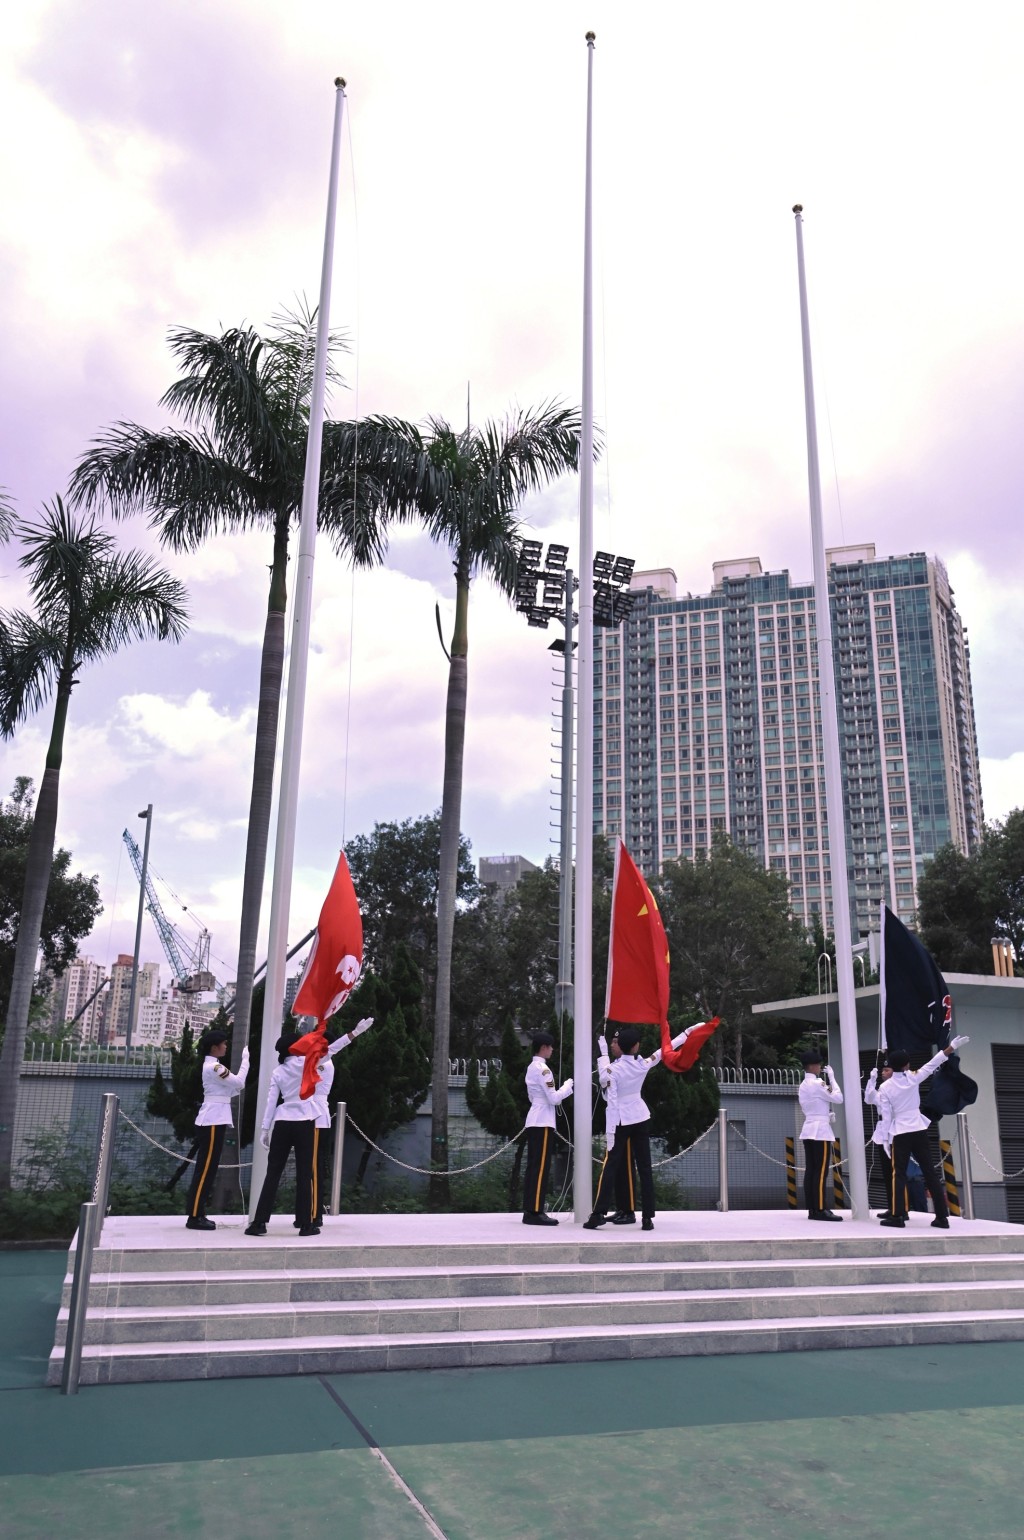 少年团仪仗队进行升旗仪式。政府新闻处图片